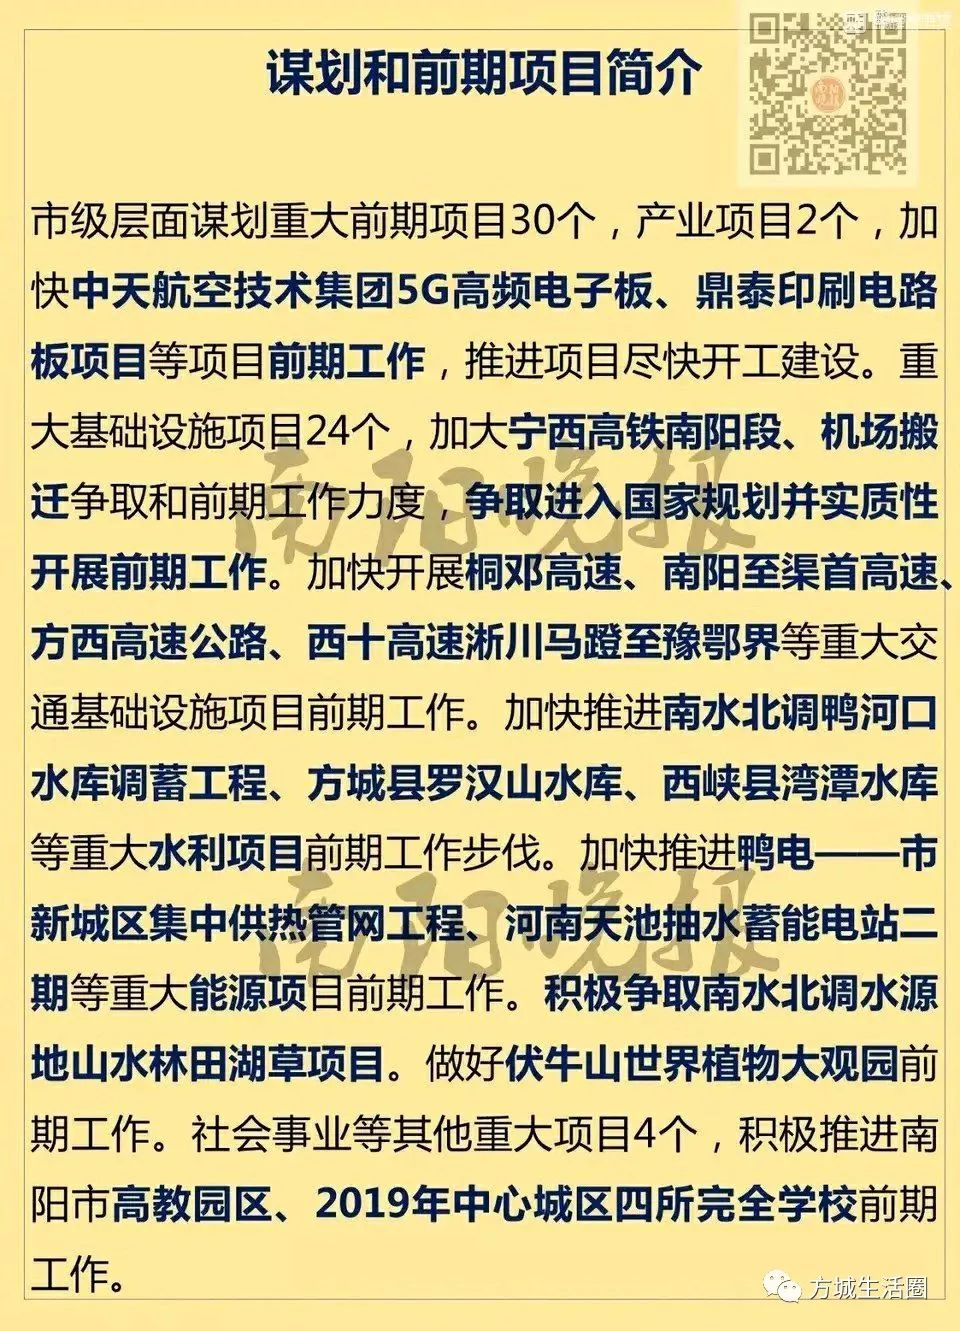 2019新开年,汉山水库项目的重提5月20日下午,南阳市人民政府副市长